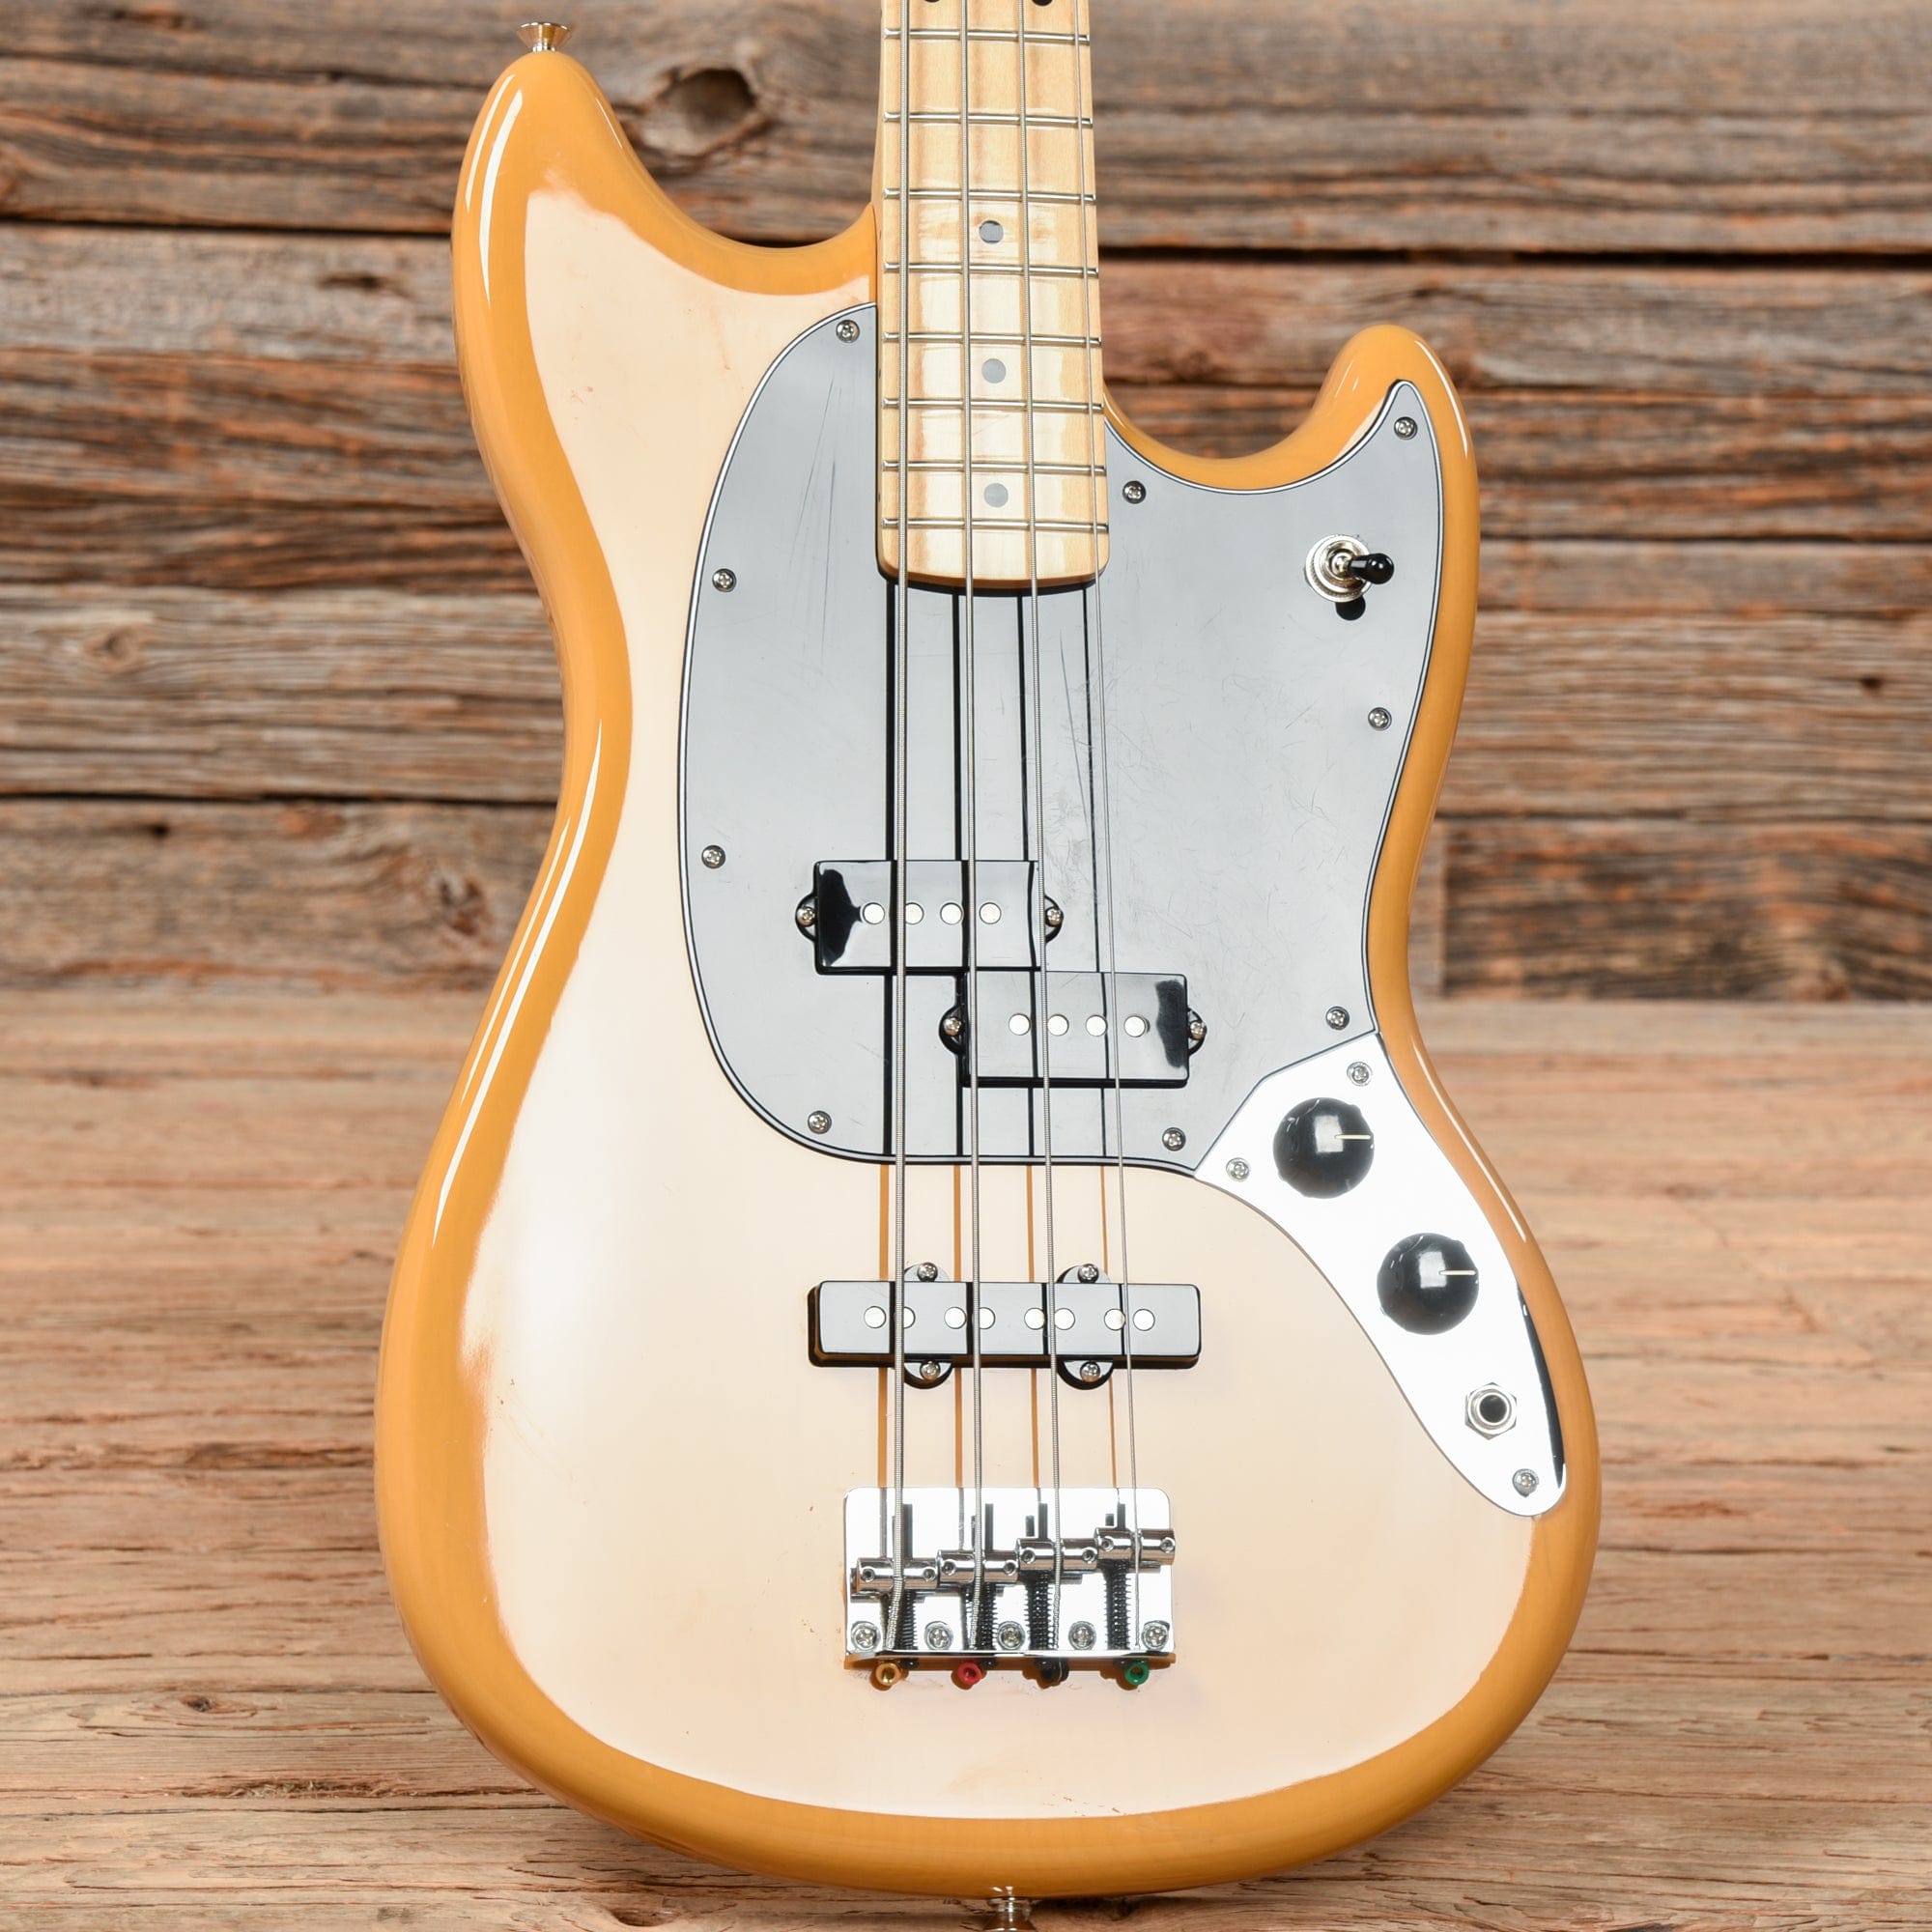 Fender Player Mustang PJ Bass Butterscotch Blonde 2021 Bass Guitars / 4-String